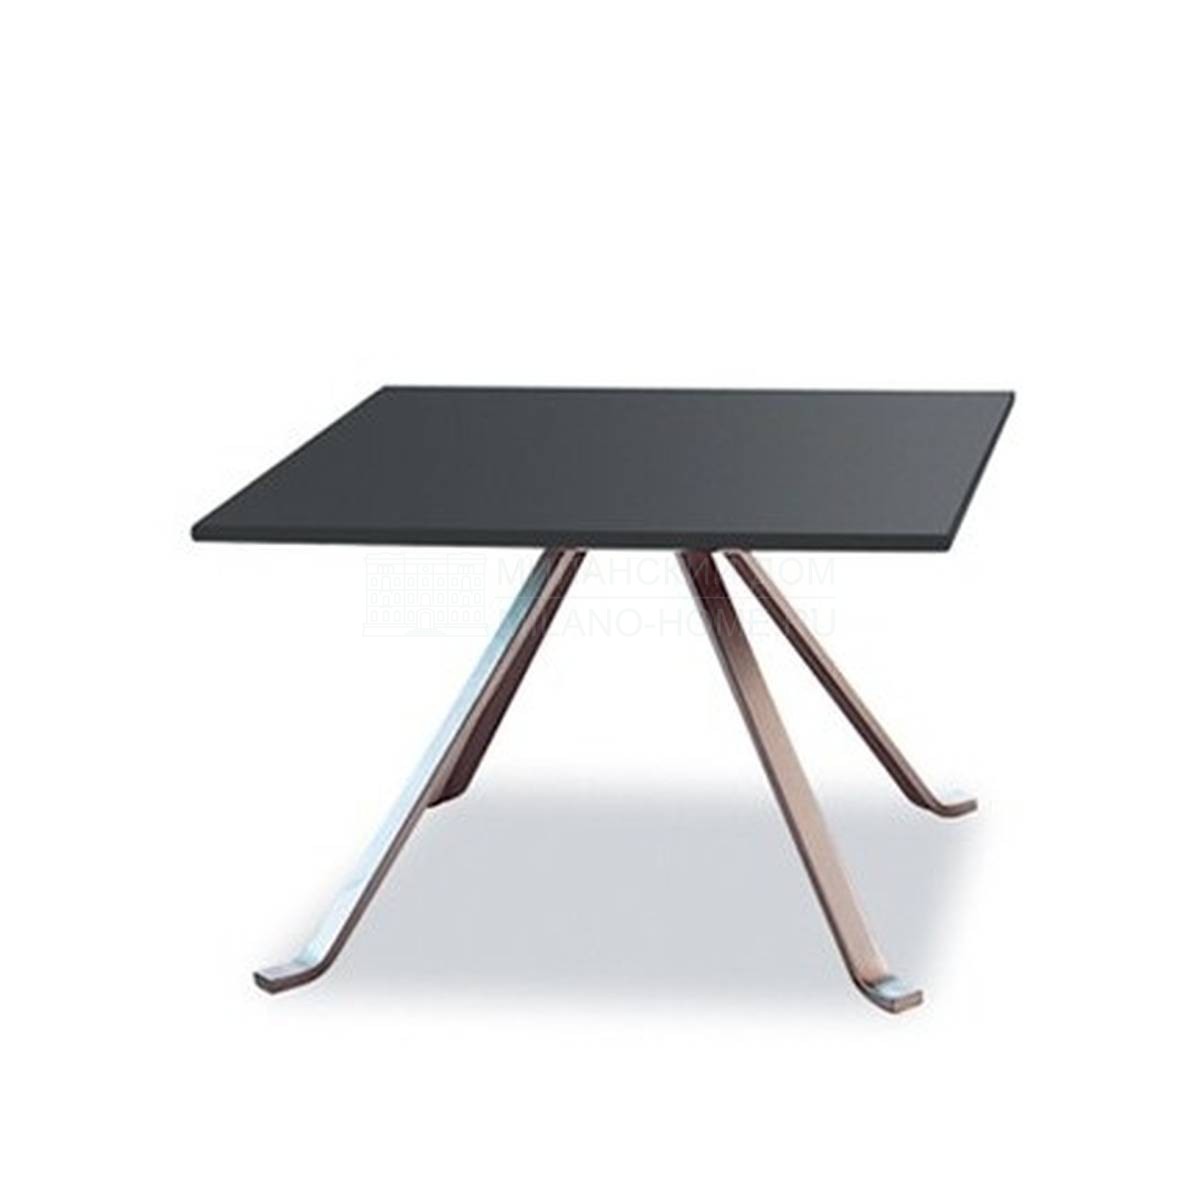 Кофейный столик Wave side table  из Италии фабрики TONON